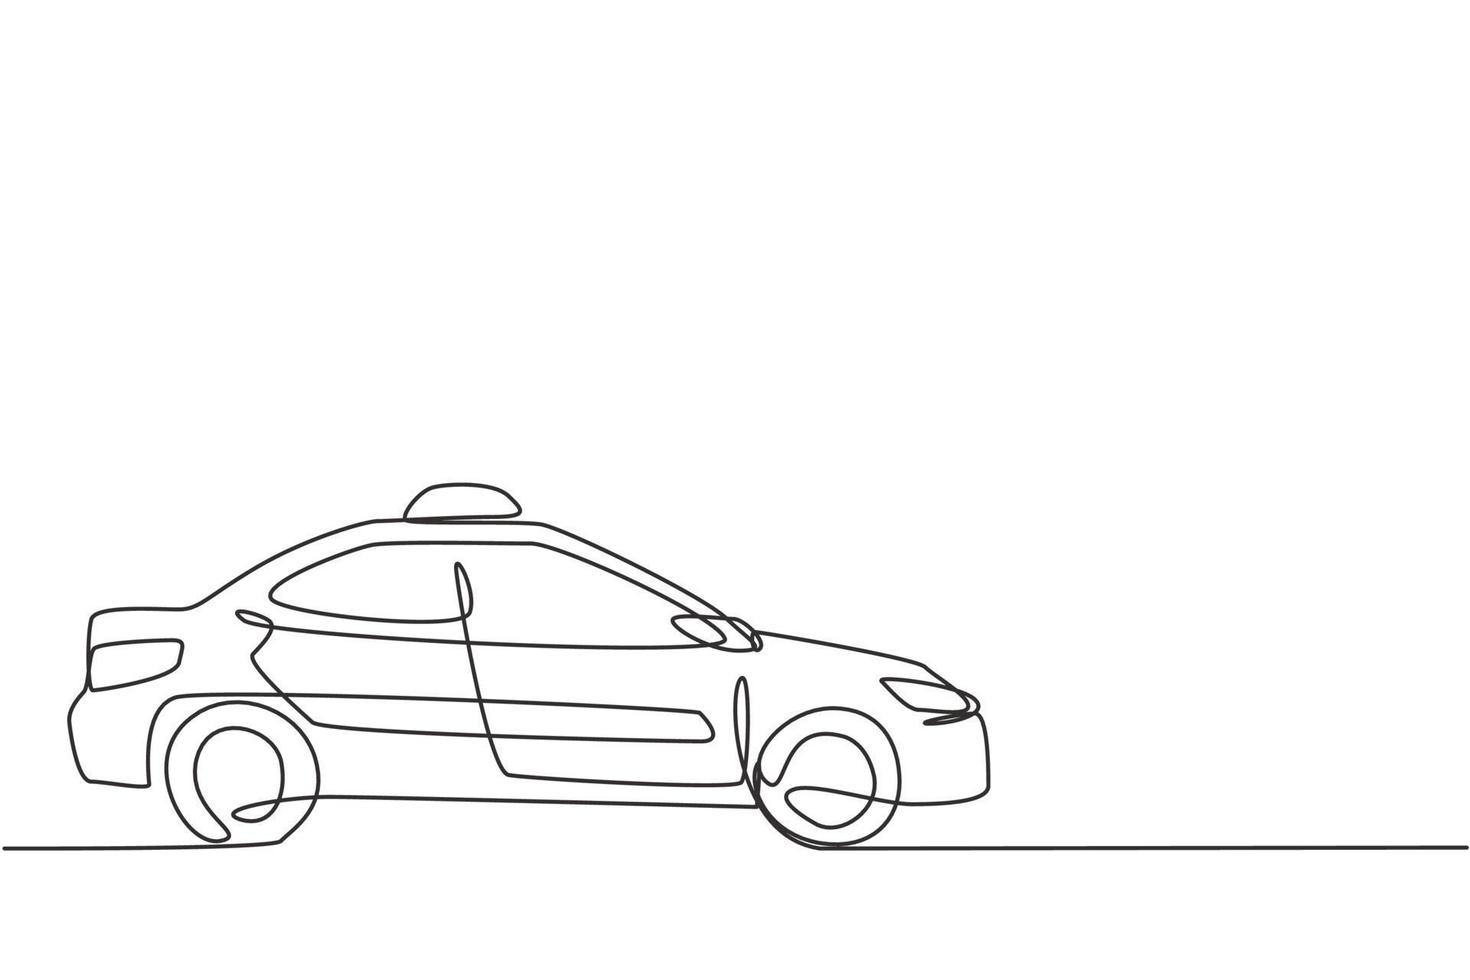 un singolo disegno a tratteggio della più recente auto moderna taxi utilizza un metro, gps e può essere ordinato online. progressi tecnologici nei trasporti. linea continua disegnare disegno grafico illustrazione vettoriale. vettore